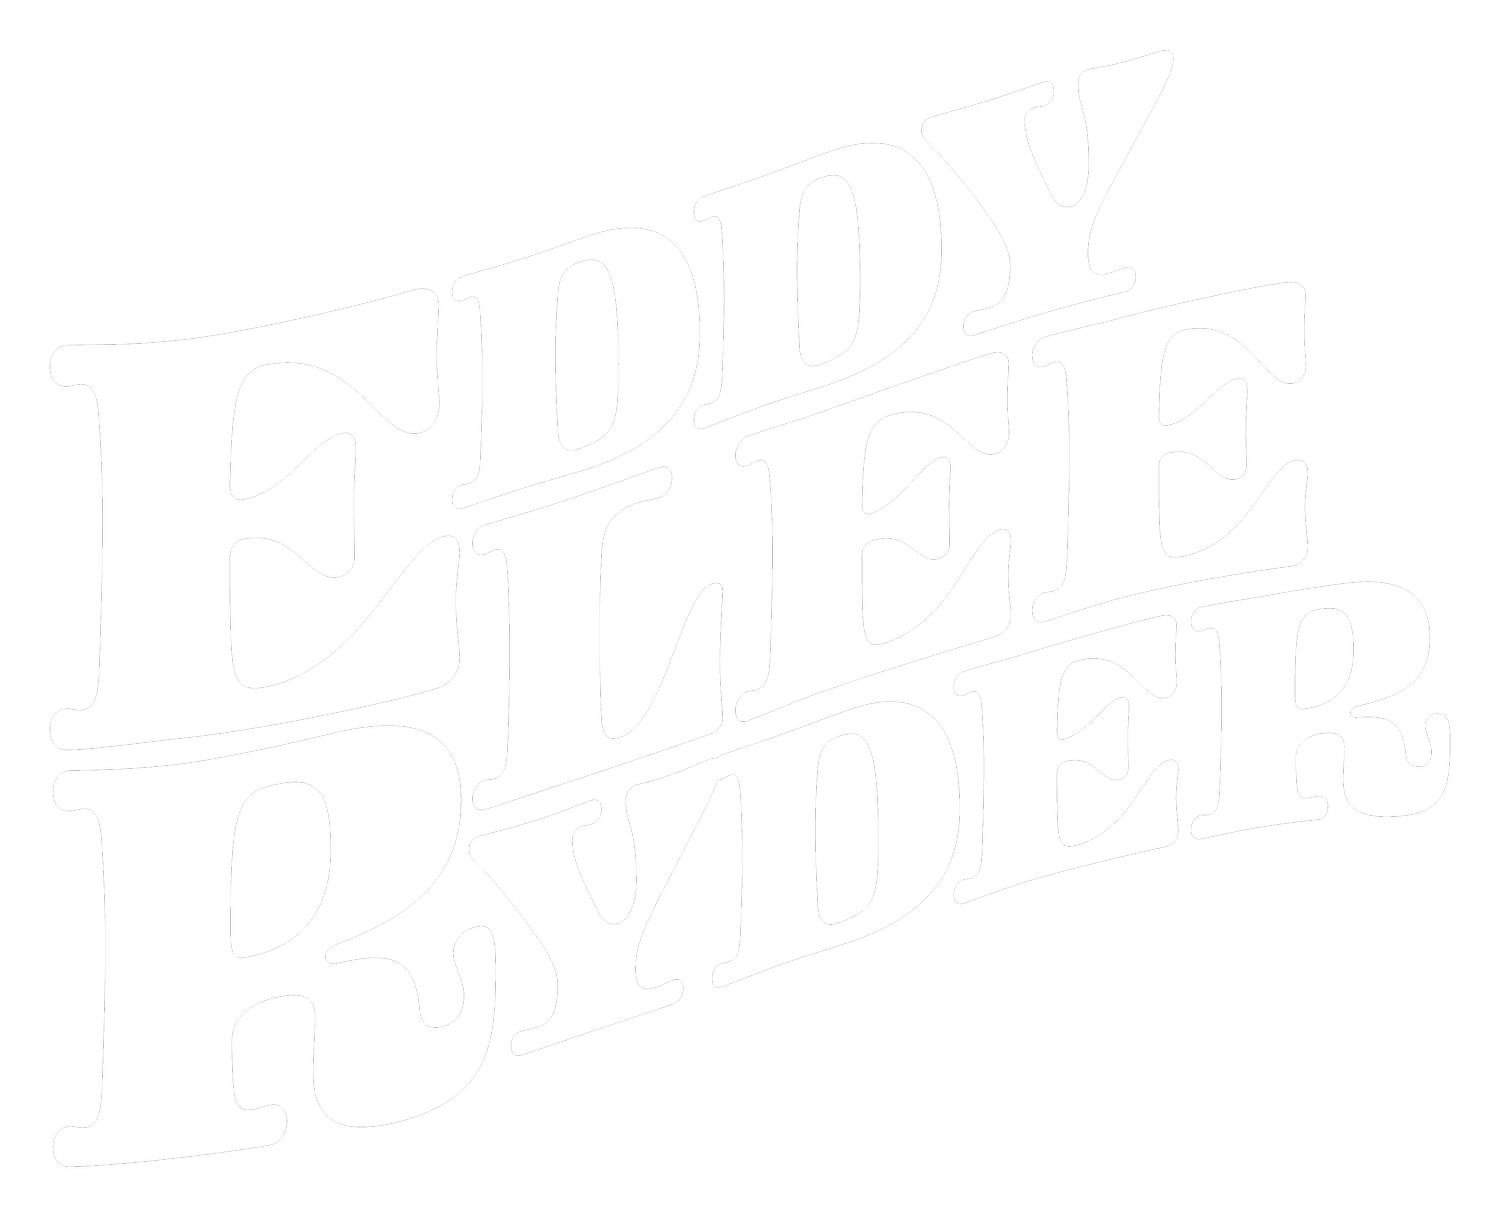 Eddy Lee Ryder